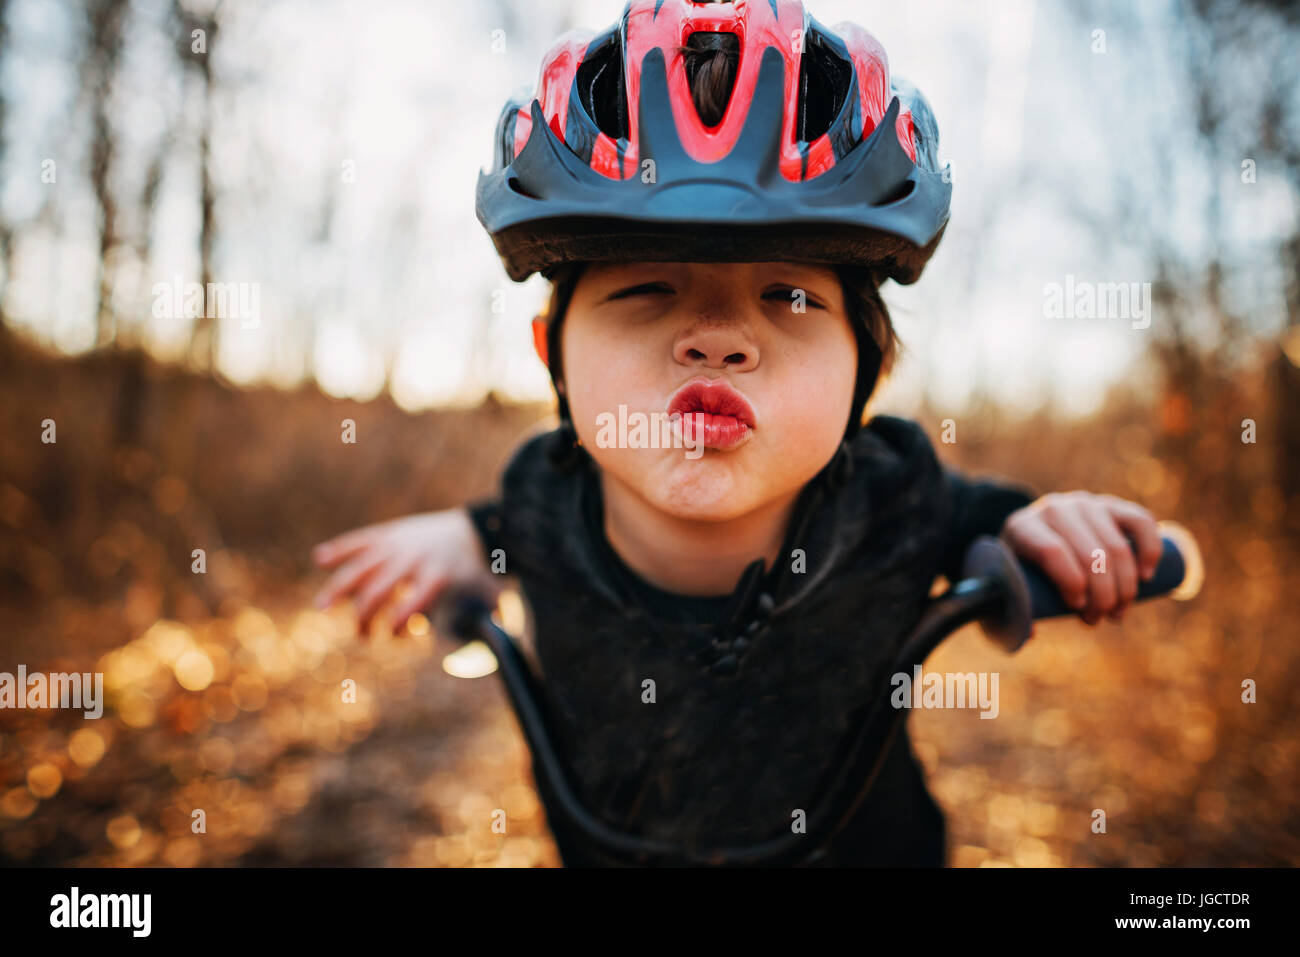 Garçon sur un vélo portant un casque puckering lips Banque D'Images